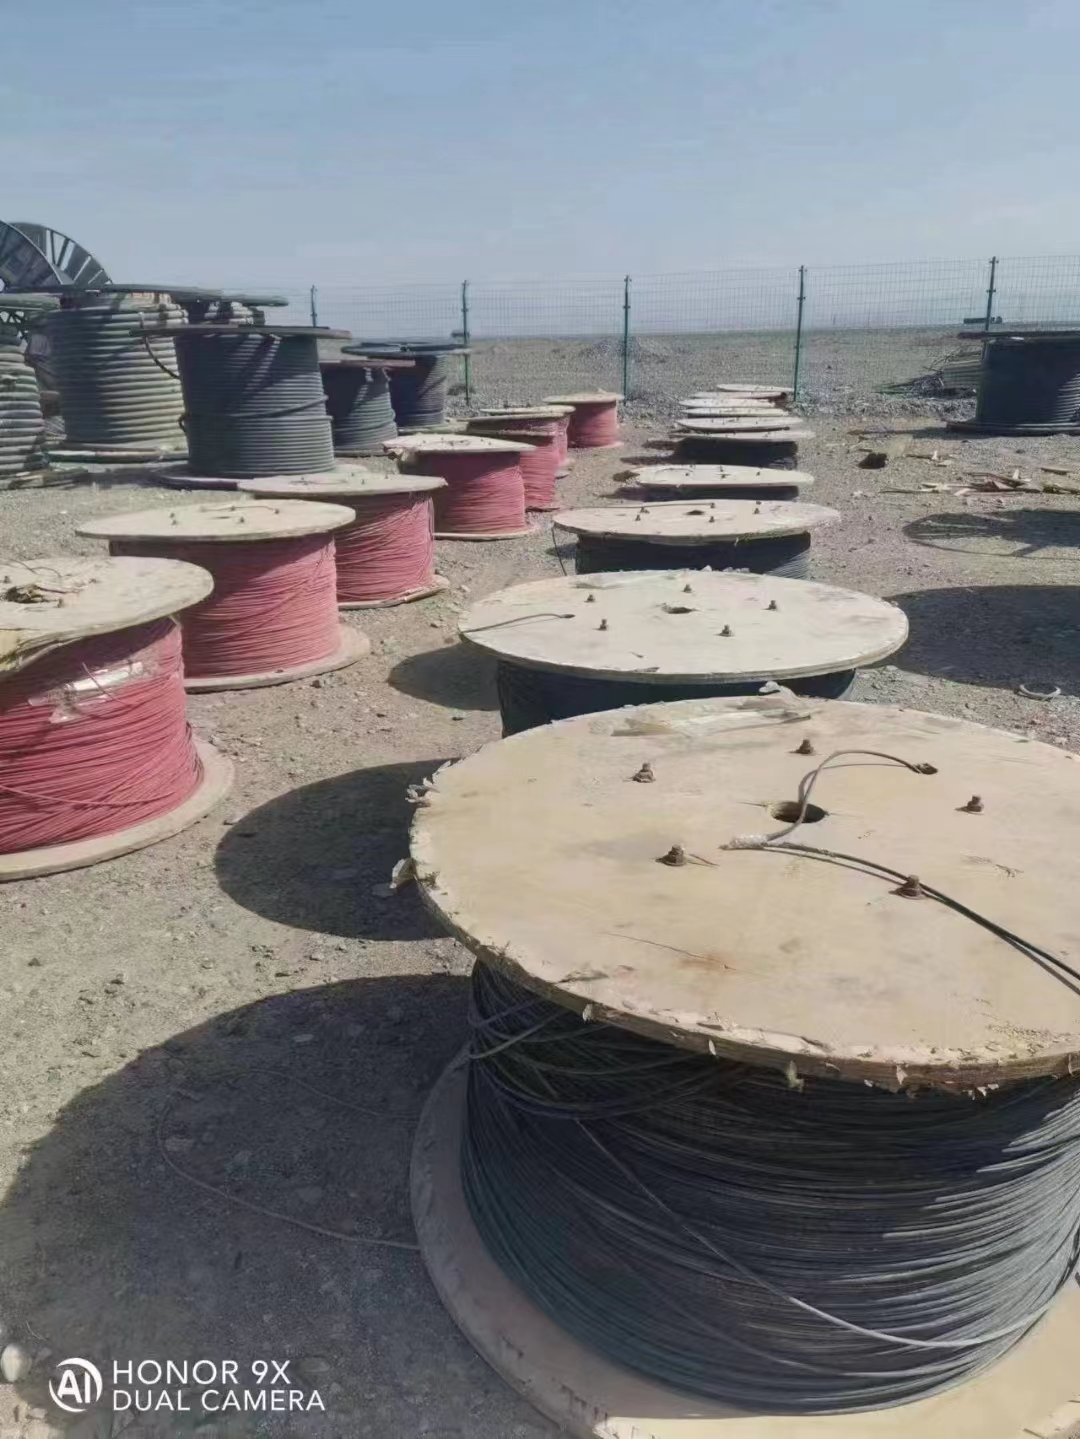 静安高低压电缆回收,吉林船营区600高压电缆回收现场交易